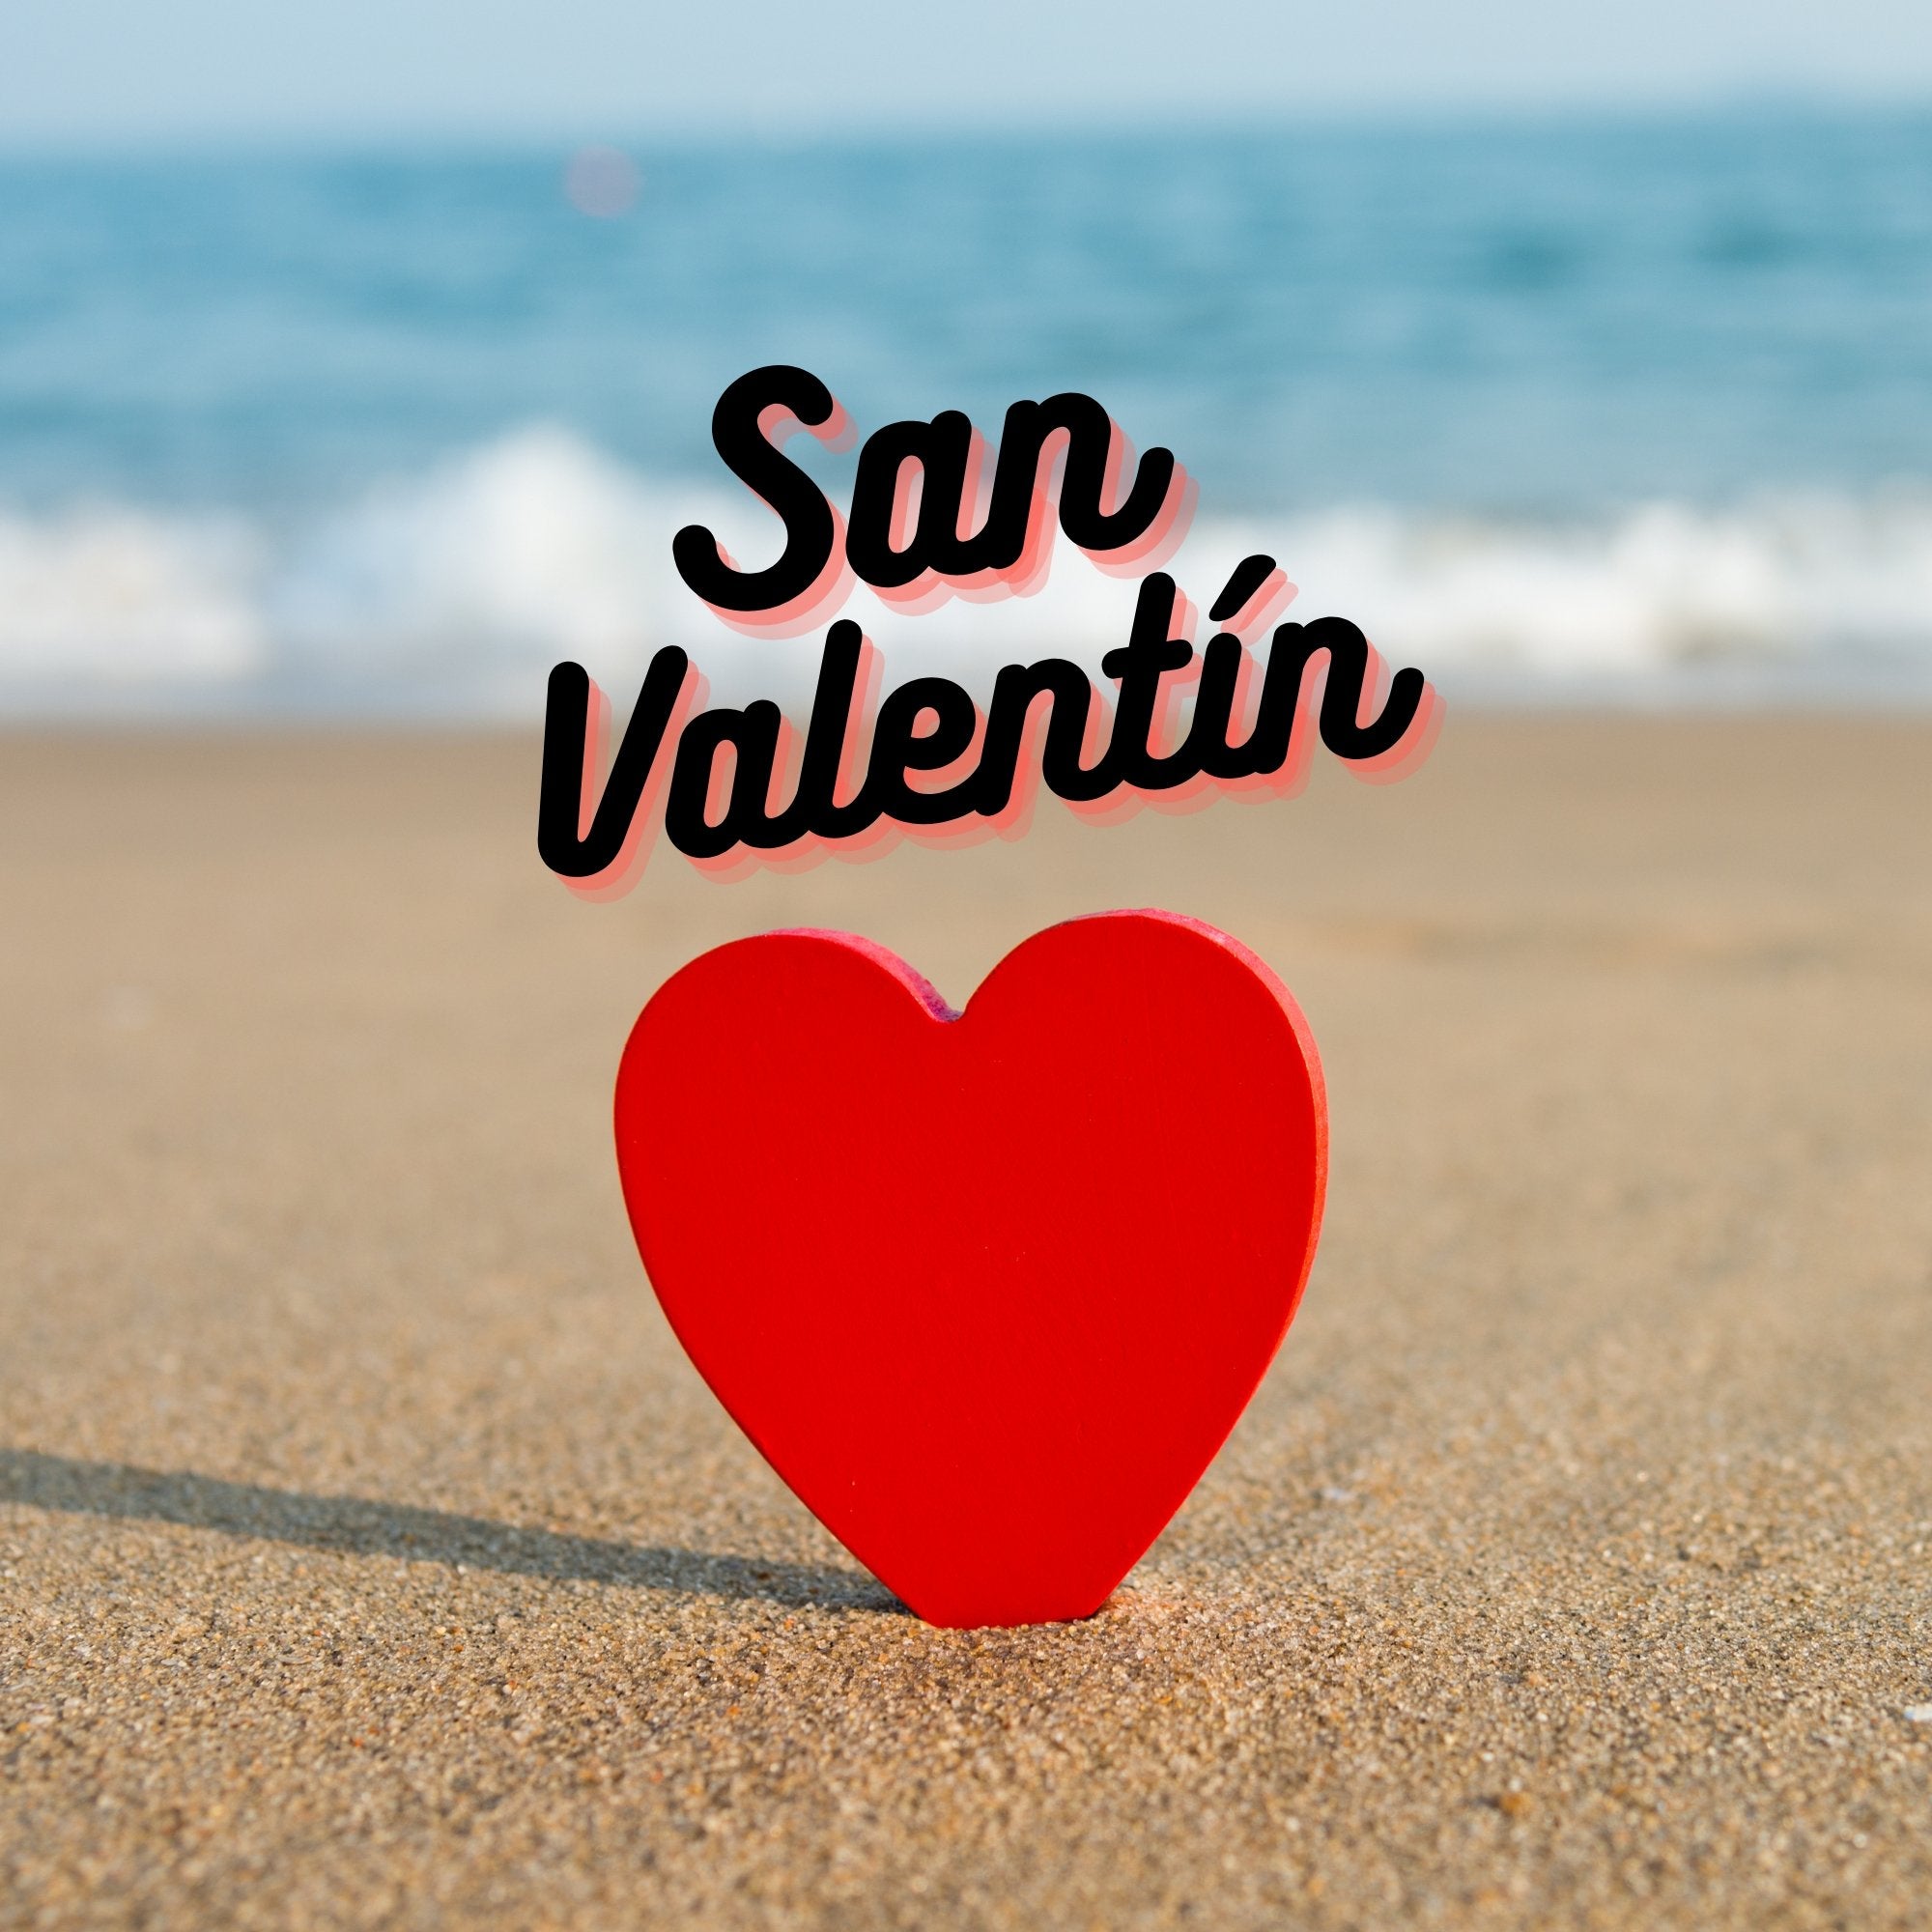 La importancia de San Valentín en España: regalando amor – Persa Flores